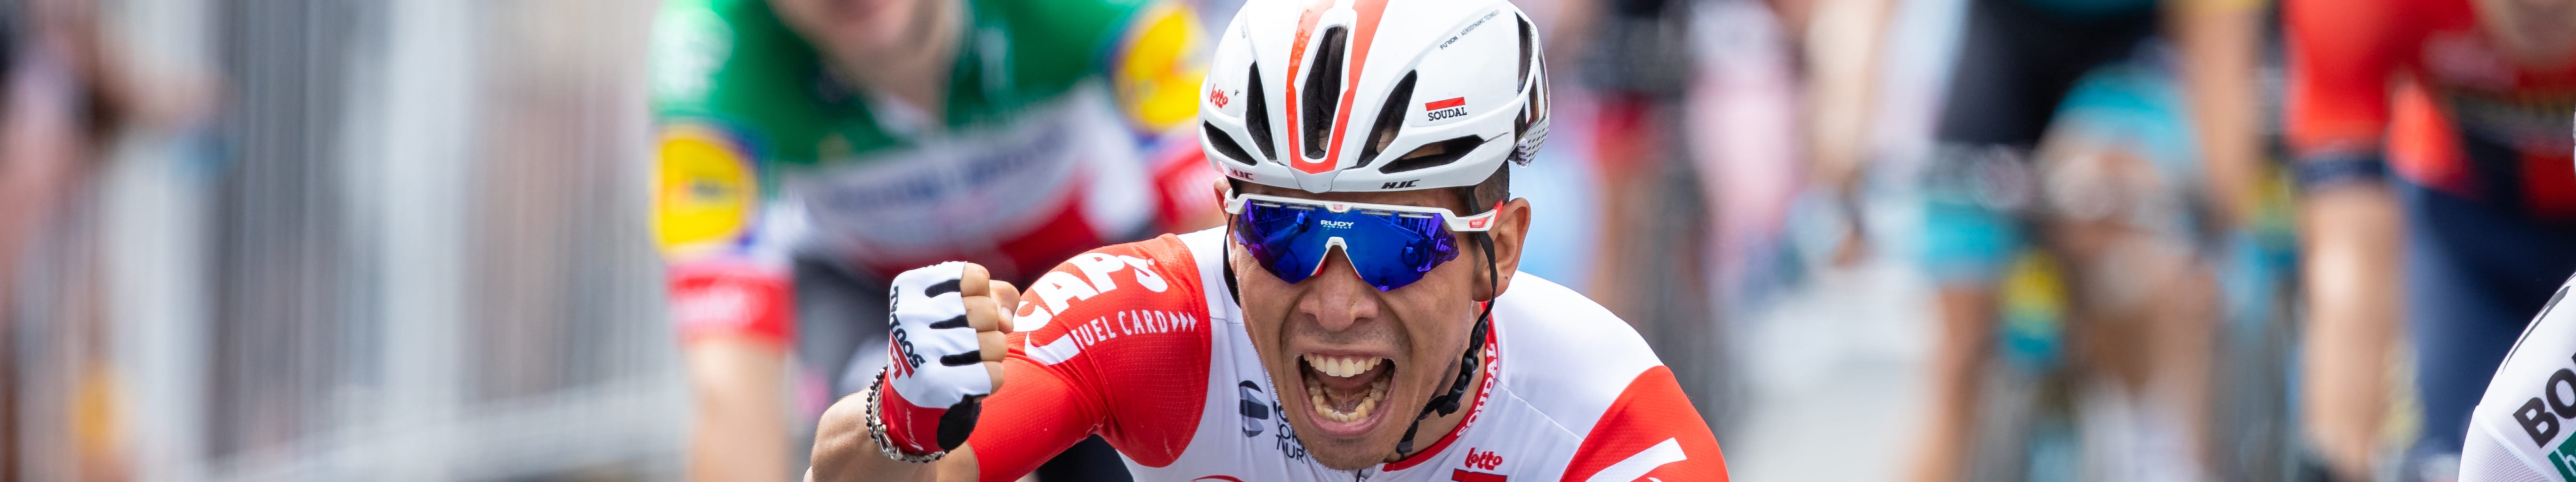 Giro d'Italia, tappa 4: occasione per Caleb Ewan a Frascati